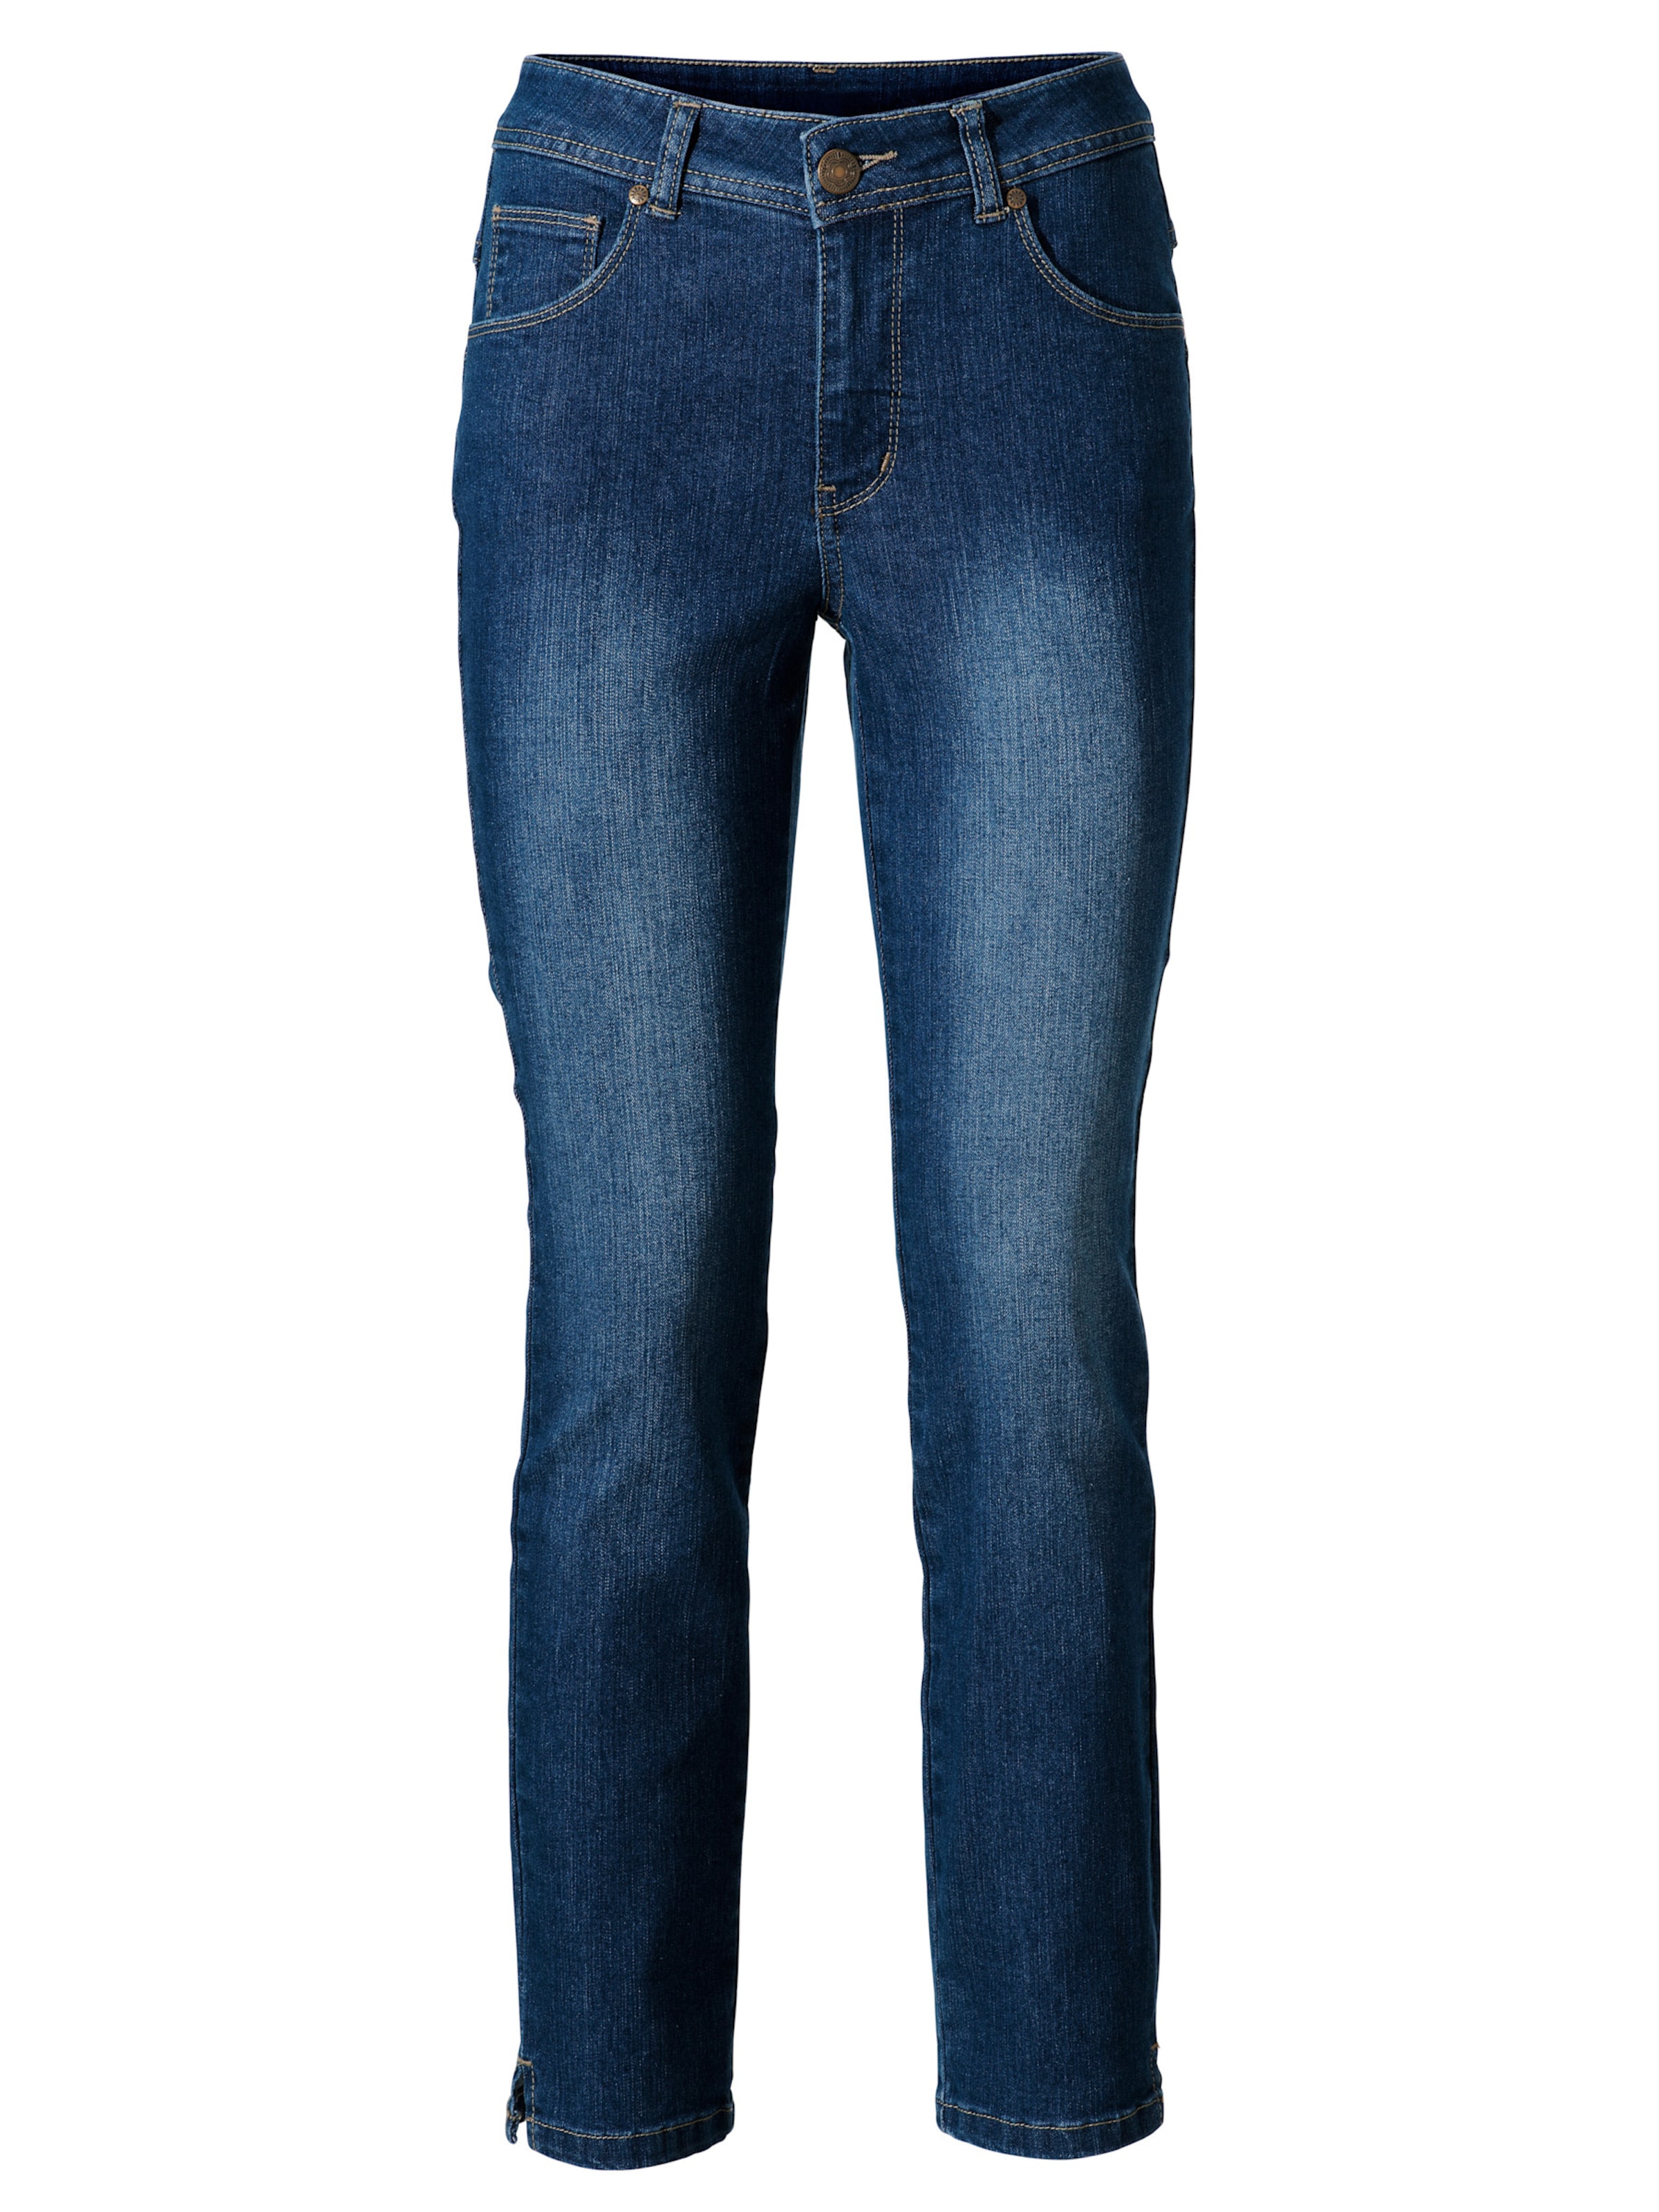 Witt Damen Bauchweg-Jeans, blue denim